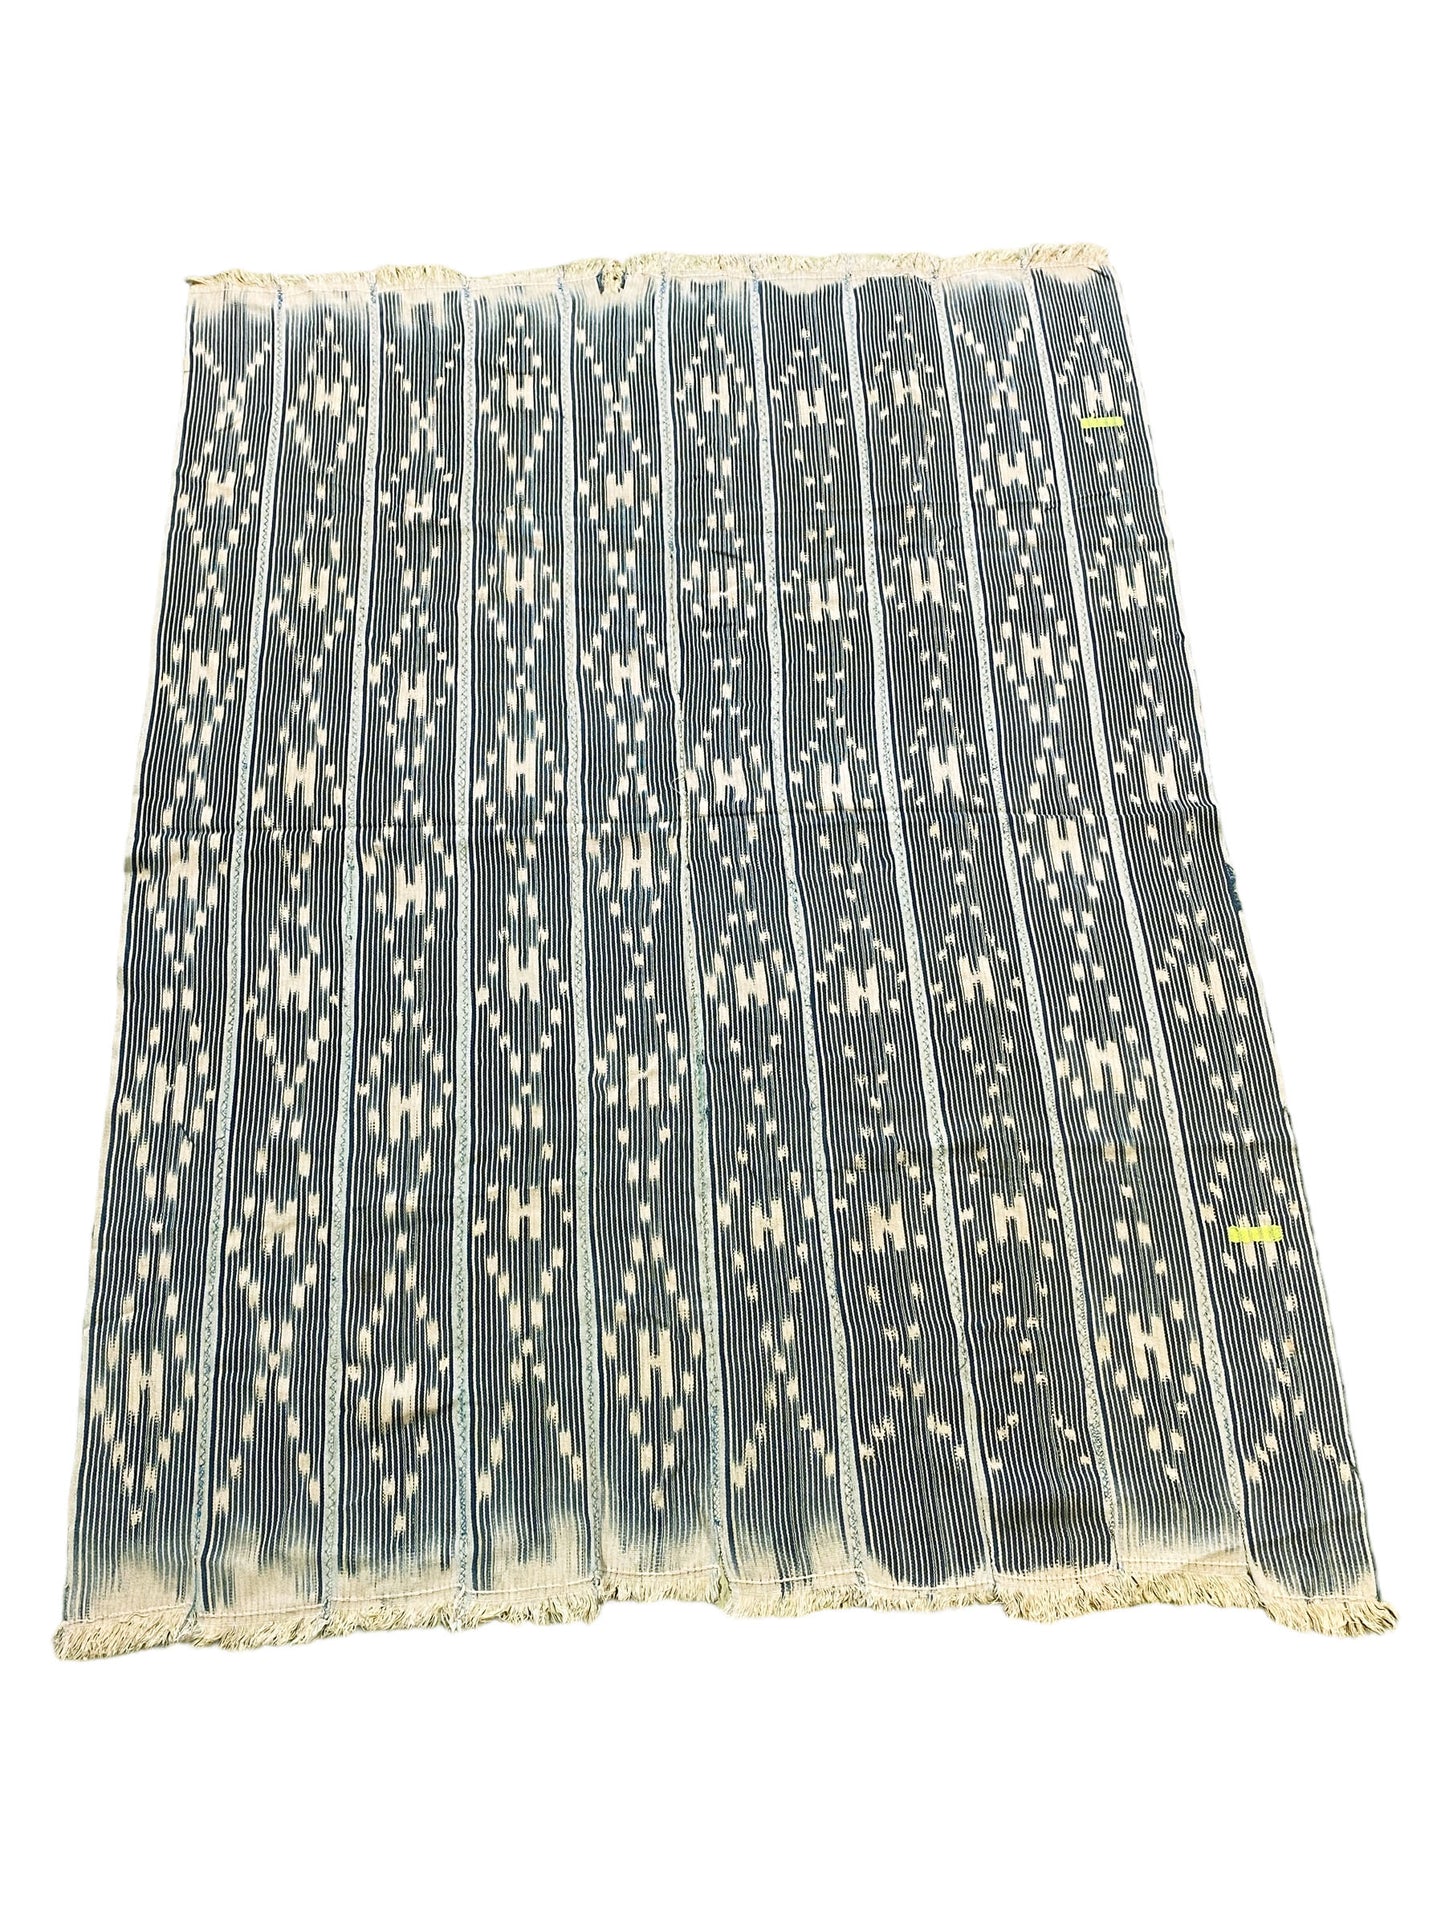 #5743 Vintage Baule /Baoulé Cloth/Textile Côte d’Ivoire. 55" by 40"